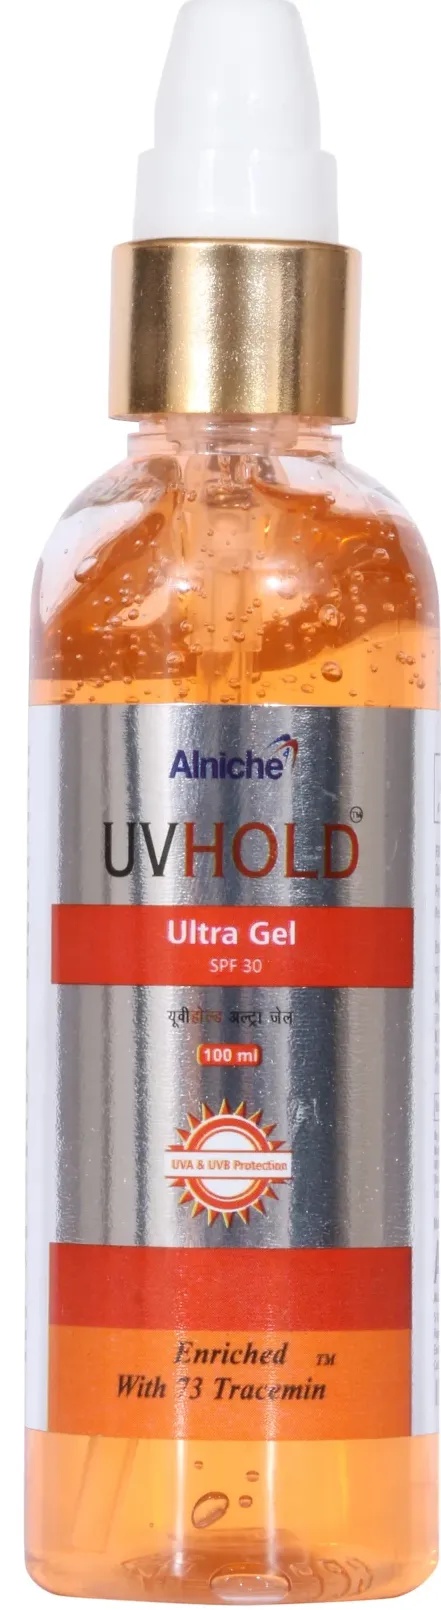 Anlinche UVHOLD SPF 30 UltraGel